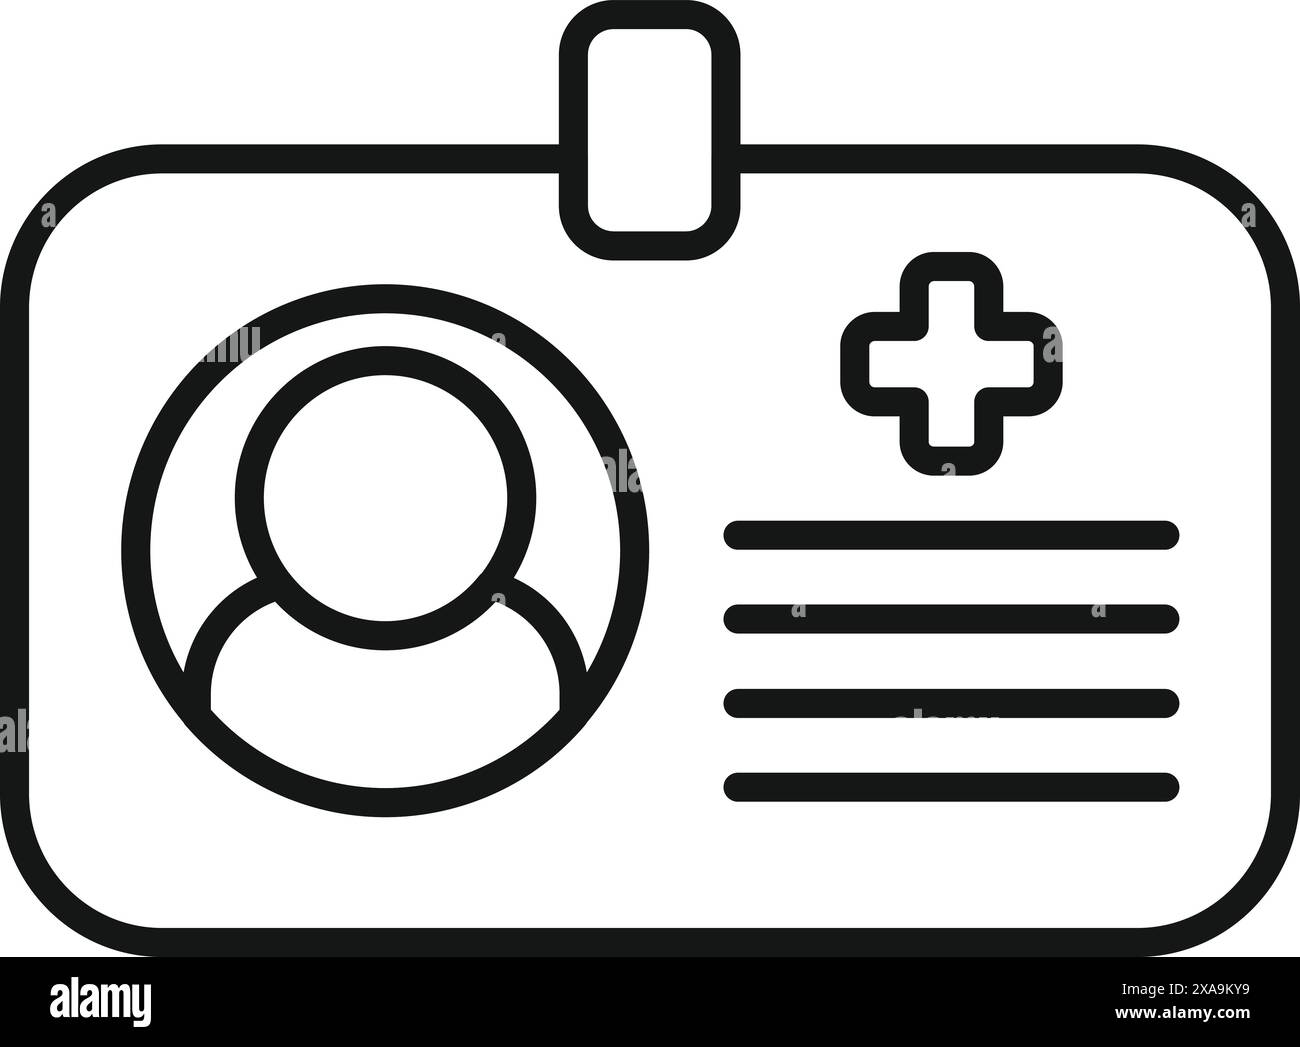 Einfaches Symbol, das einen medizinischen Ausweis darstellt und für medizinisches Fachpersonal eine wichtige Identifikation bietet Stock Vektor